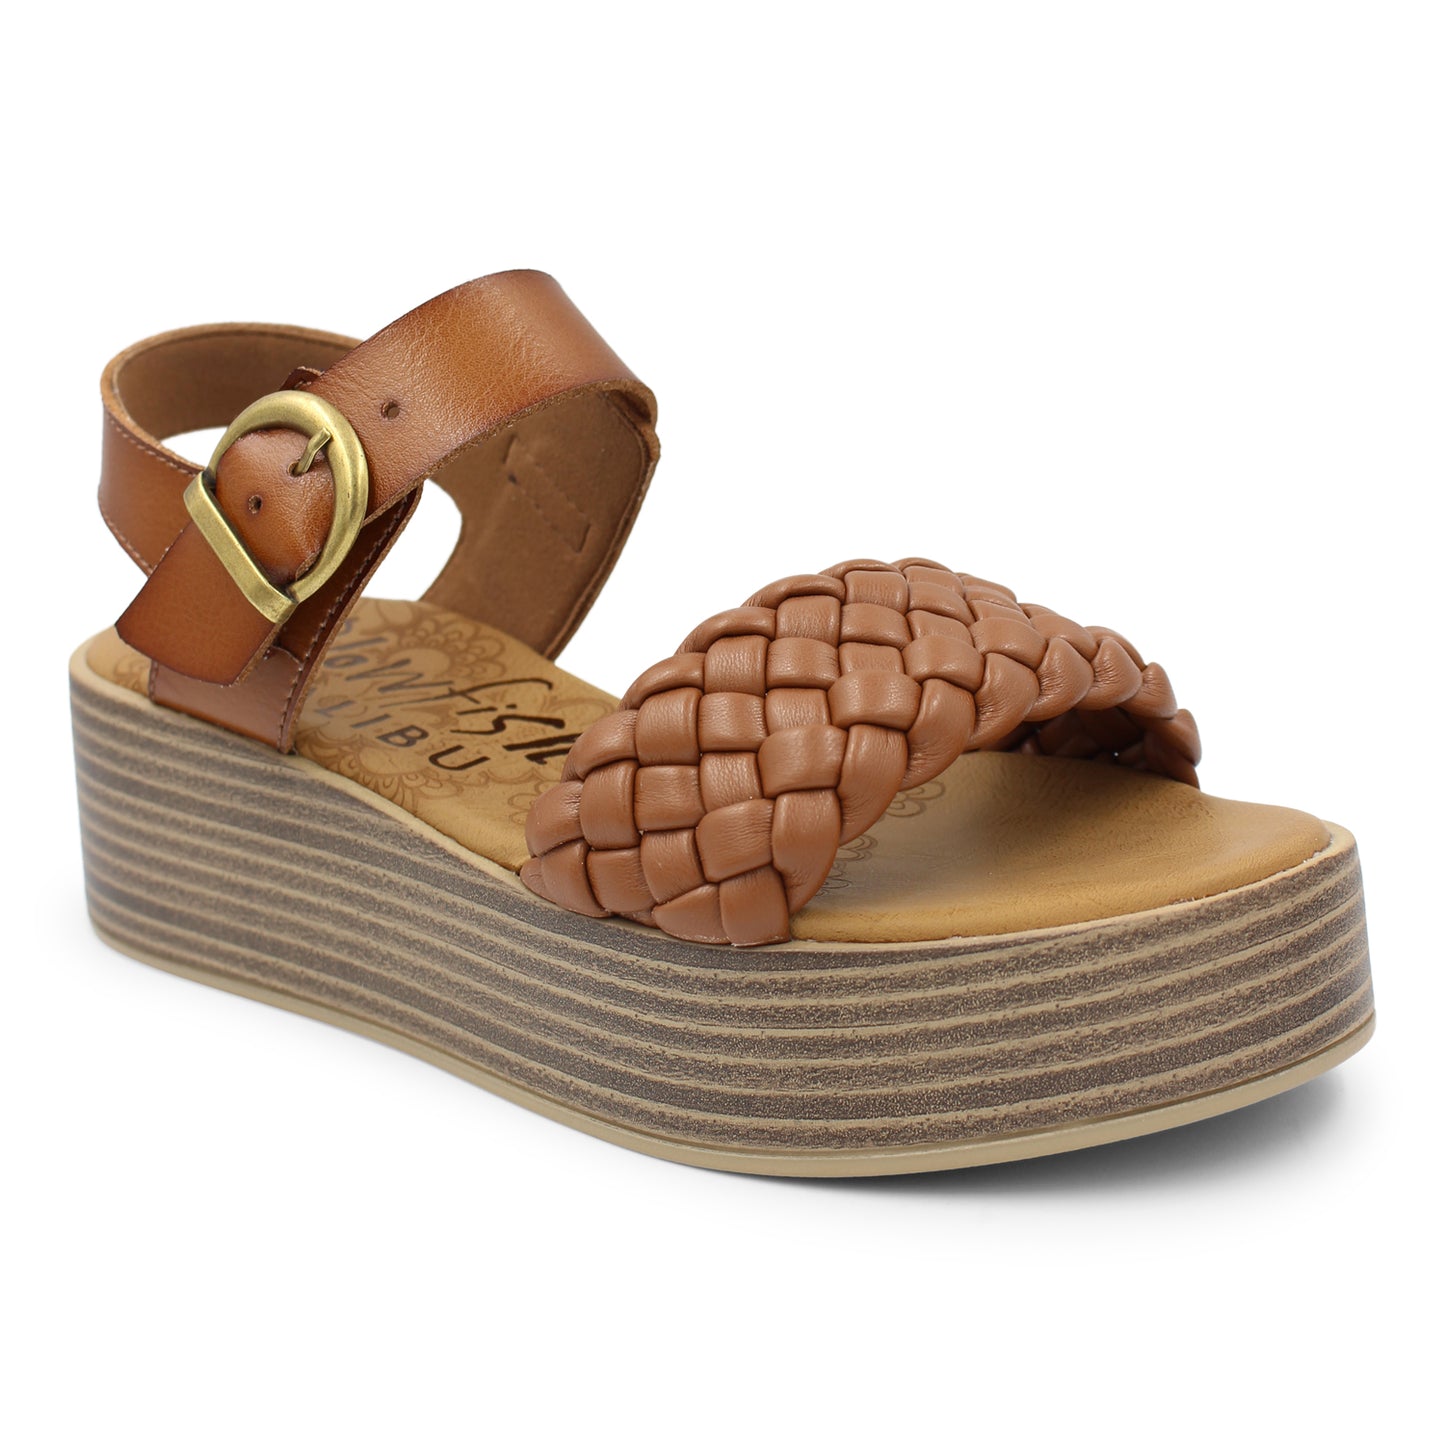 Lapaz Sandals